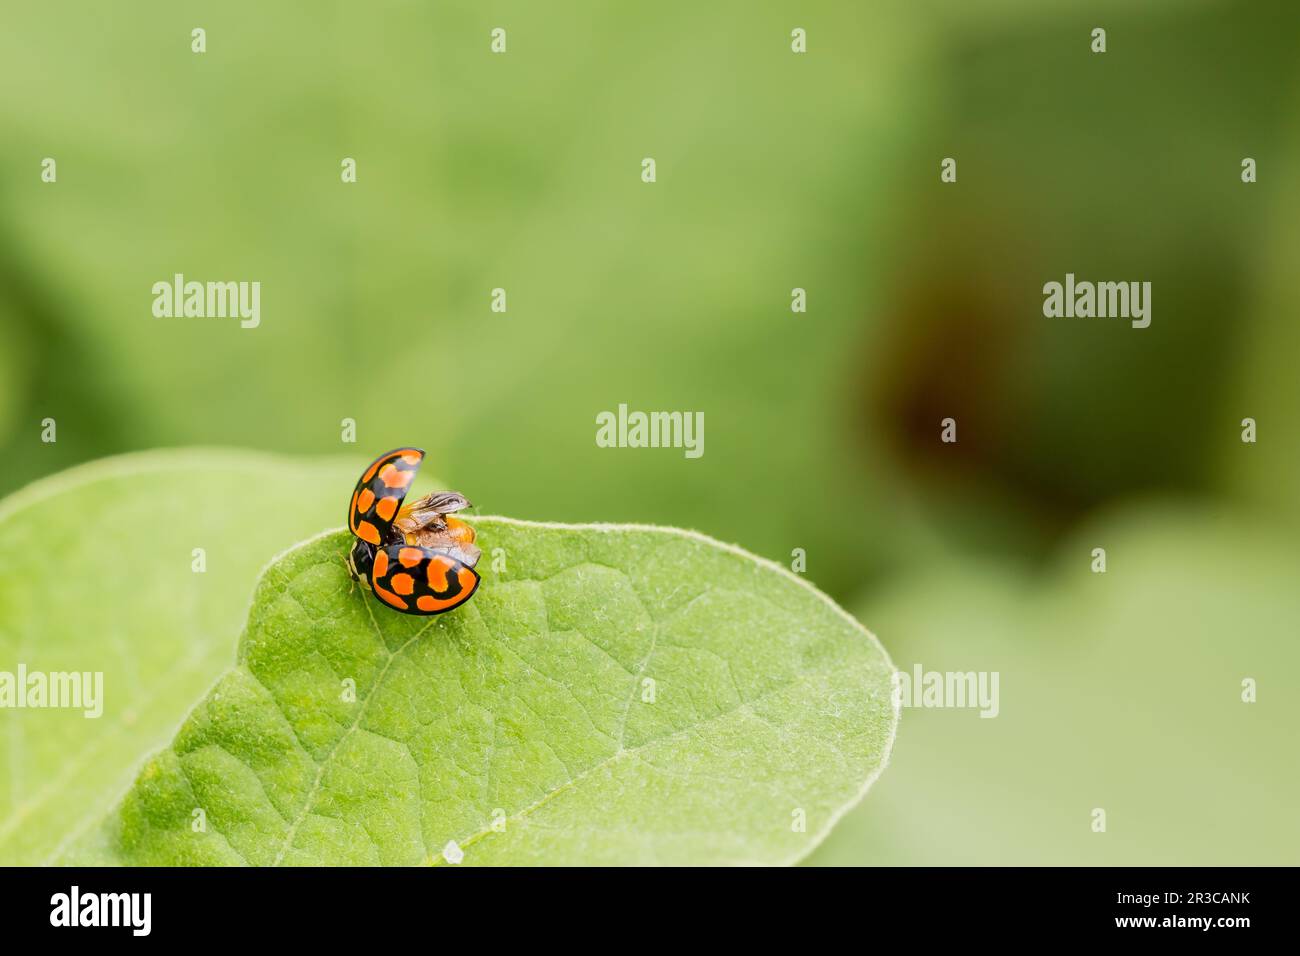 Macro Orange Ladybug close up on a green leaf Stock Photo